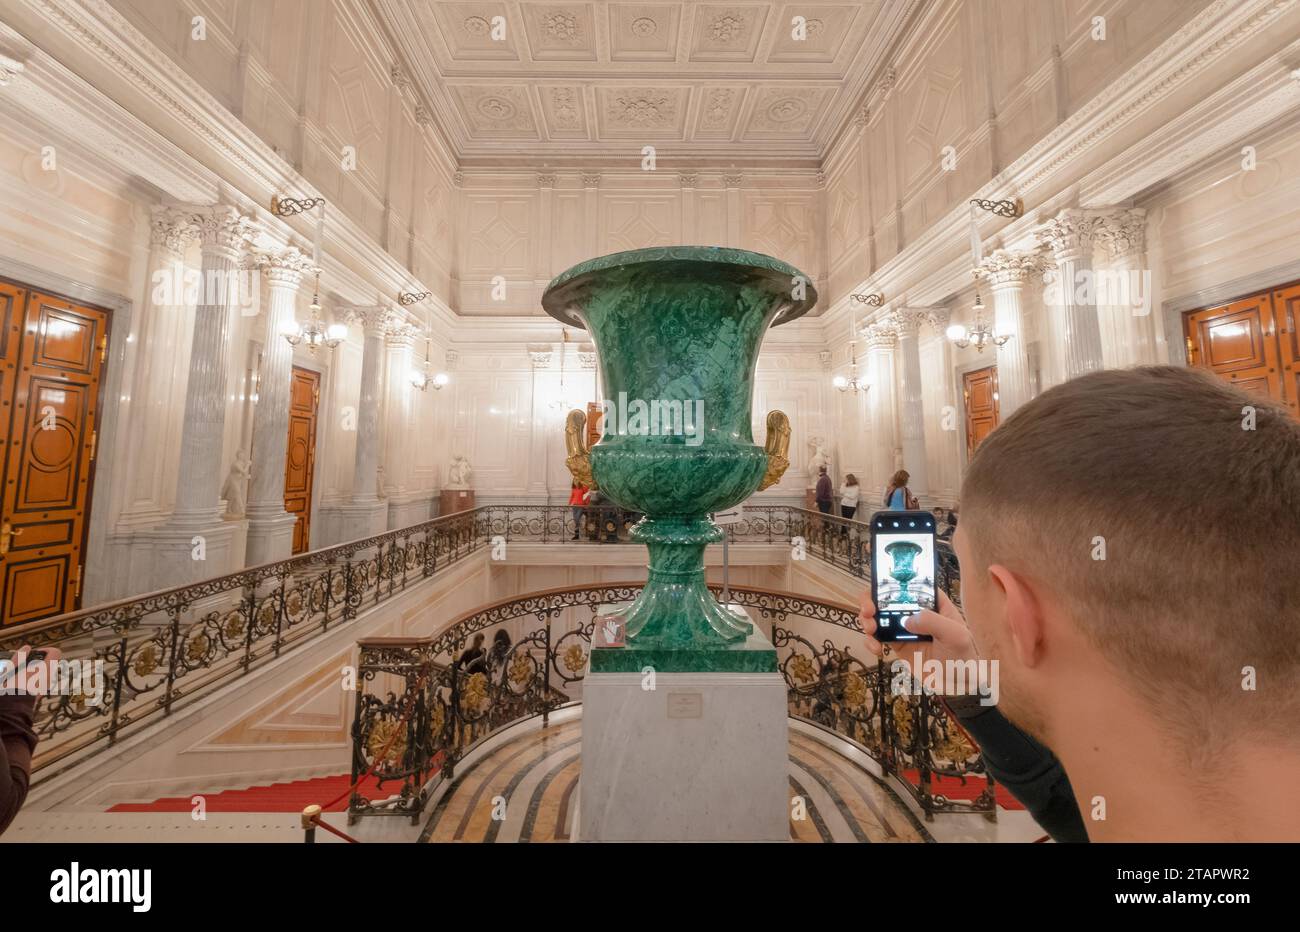 Turista che scatta una foto dei grandi luoghi dei vasi di malachite presso la scalinata sovietica nel museo del grande Ermitage, palazzo d'inverno. St Pietroburgo, Russia Foto Stock